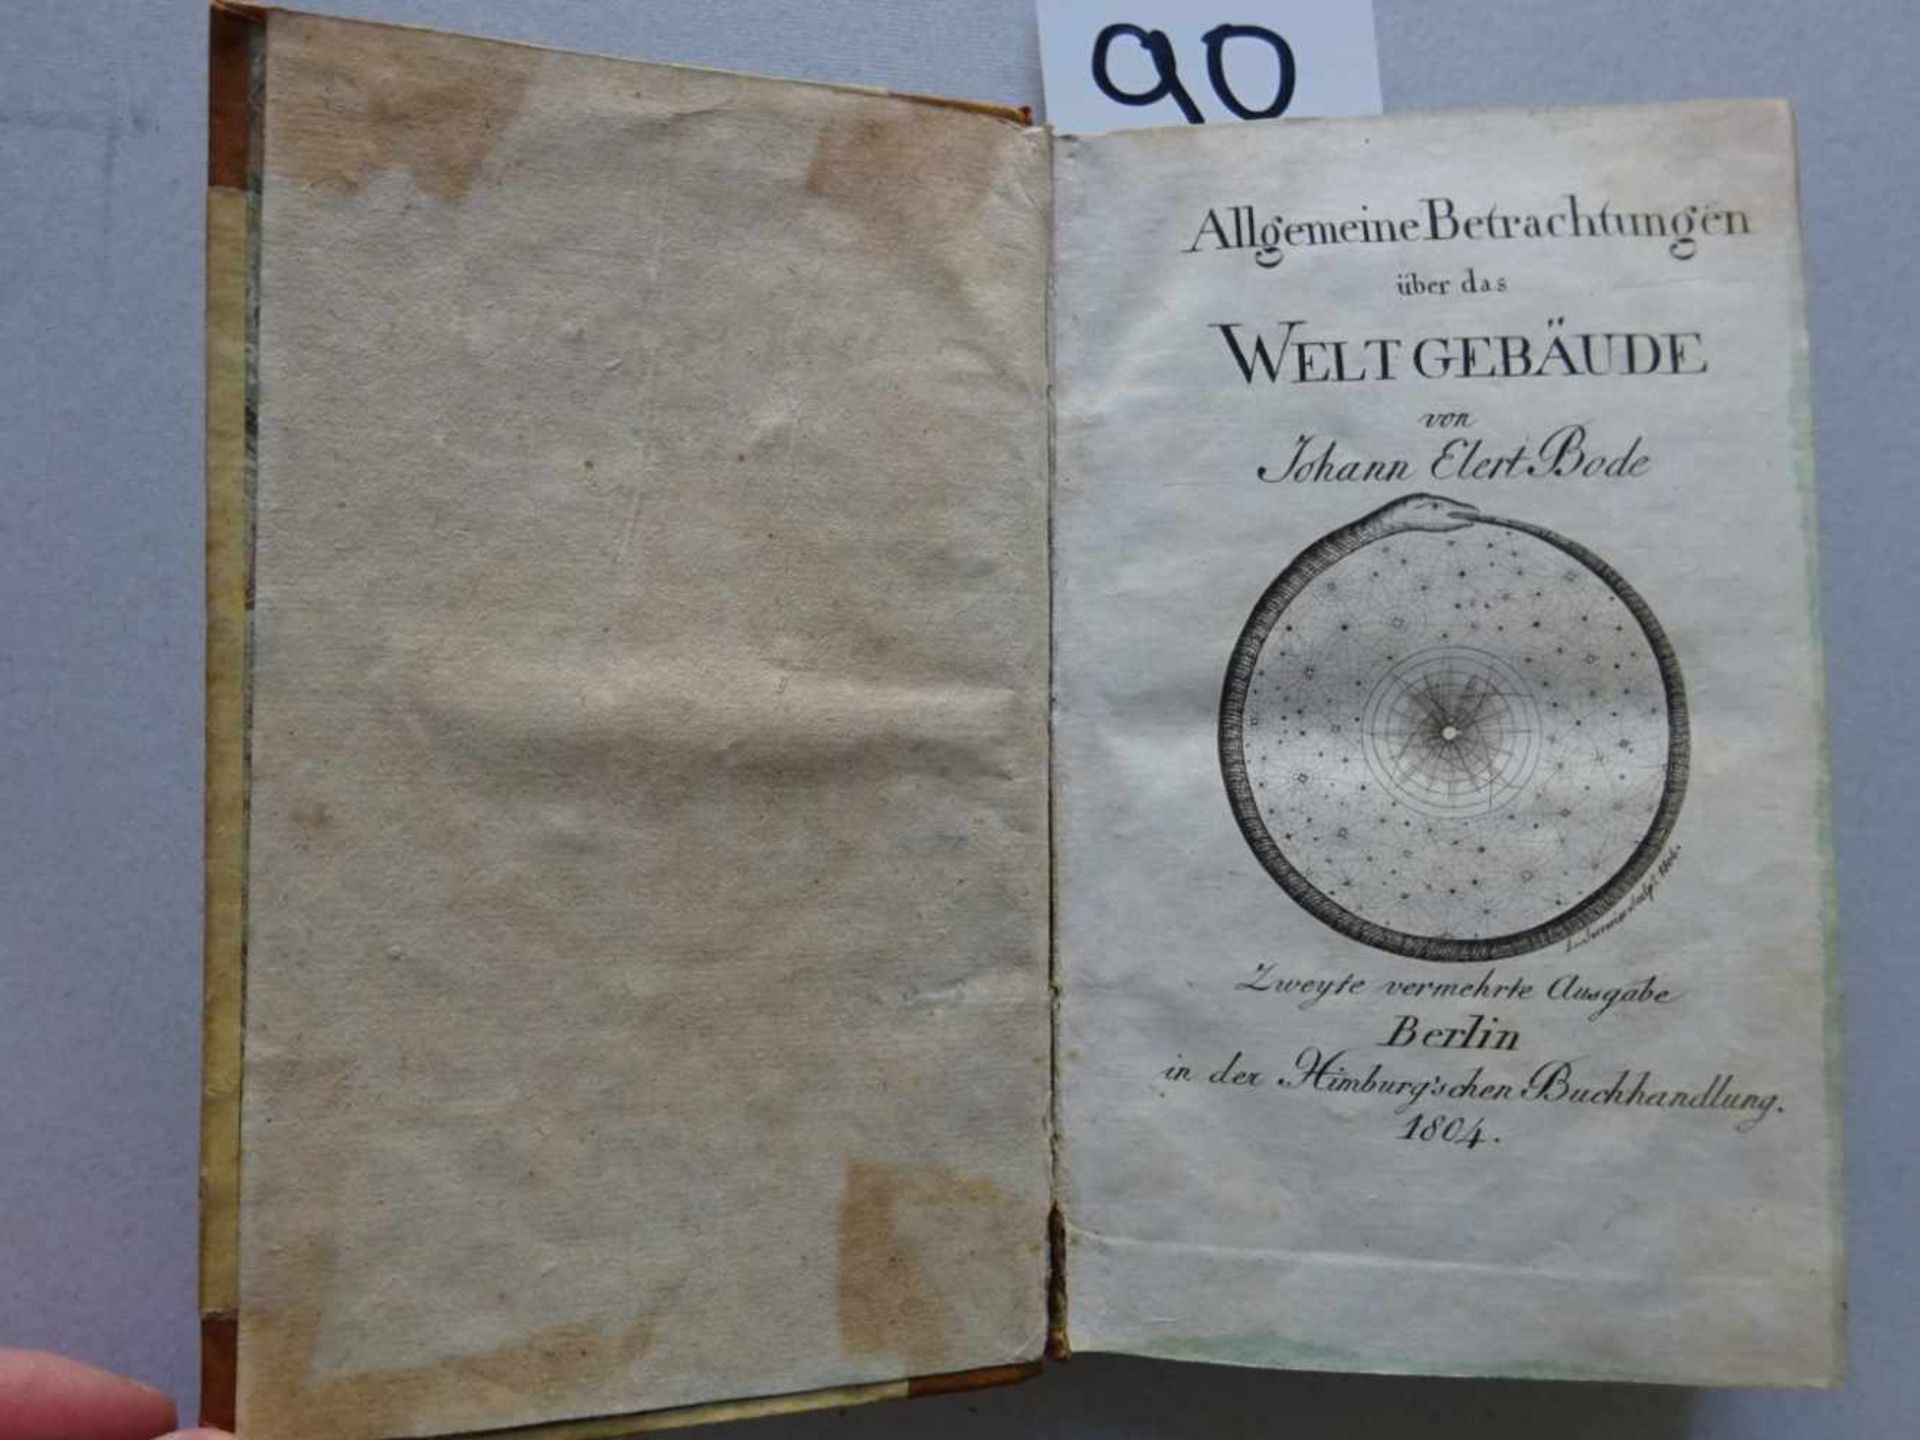 Bode, J.E.Allgemeine Betrachtungen über das Weltgebäude. 2. verm. Ausgabe. Berlin, Himburg, 1804.